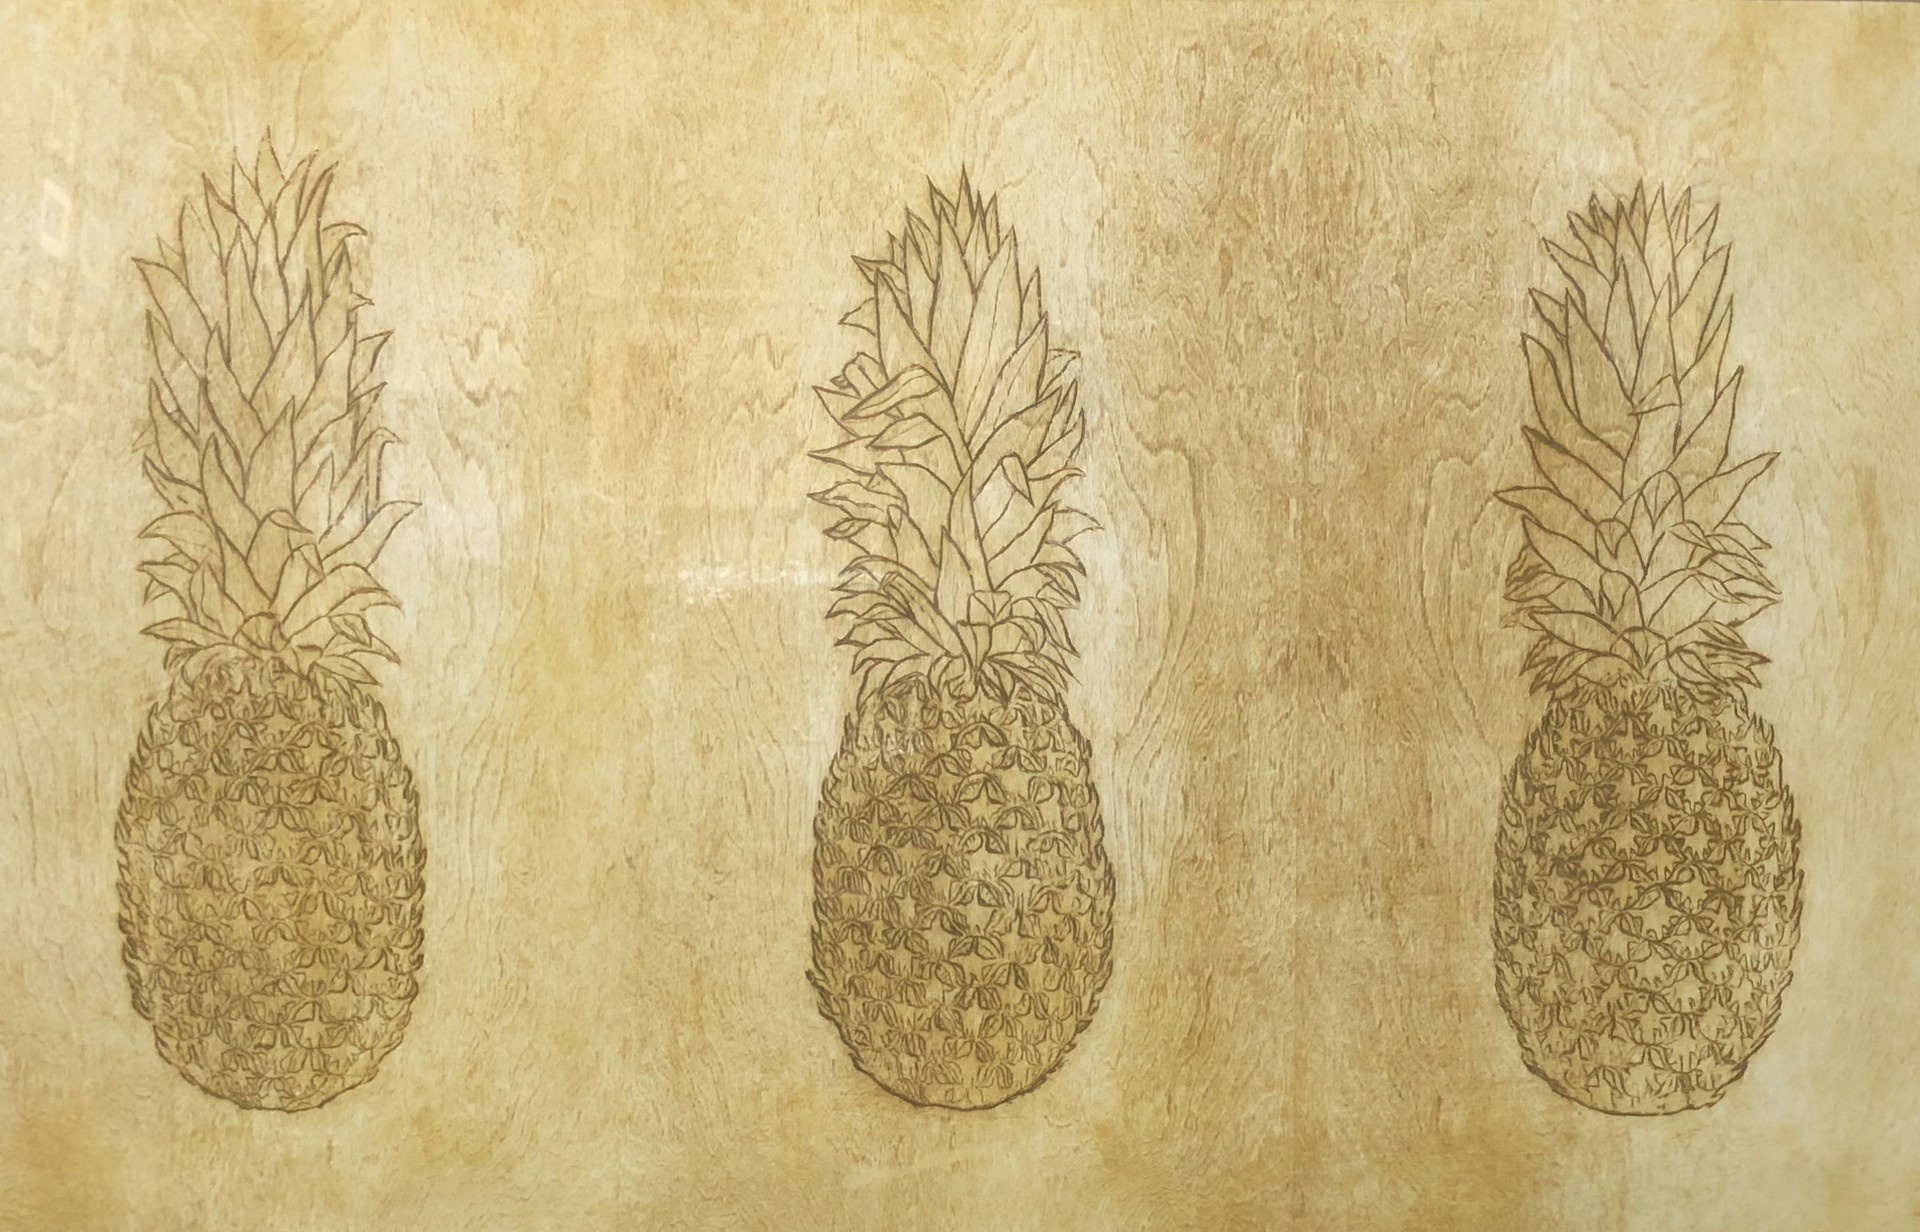 Three Pineapples by David Hefner